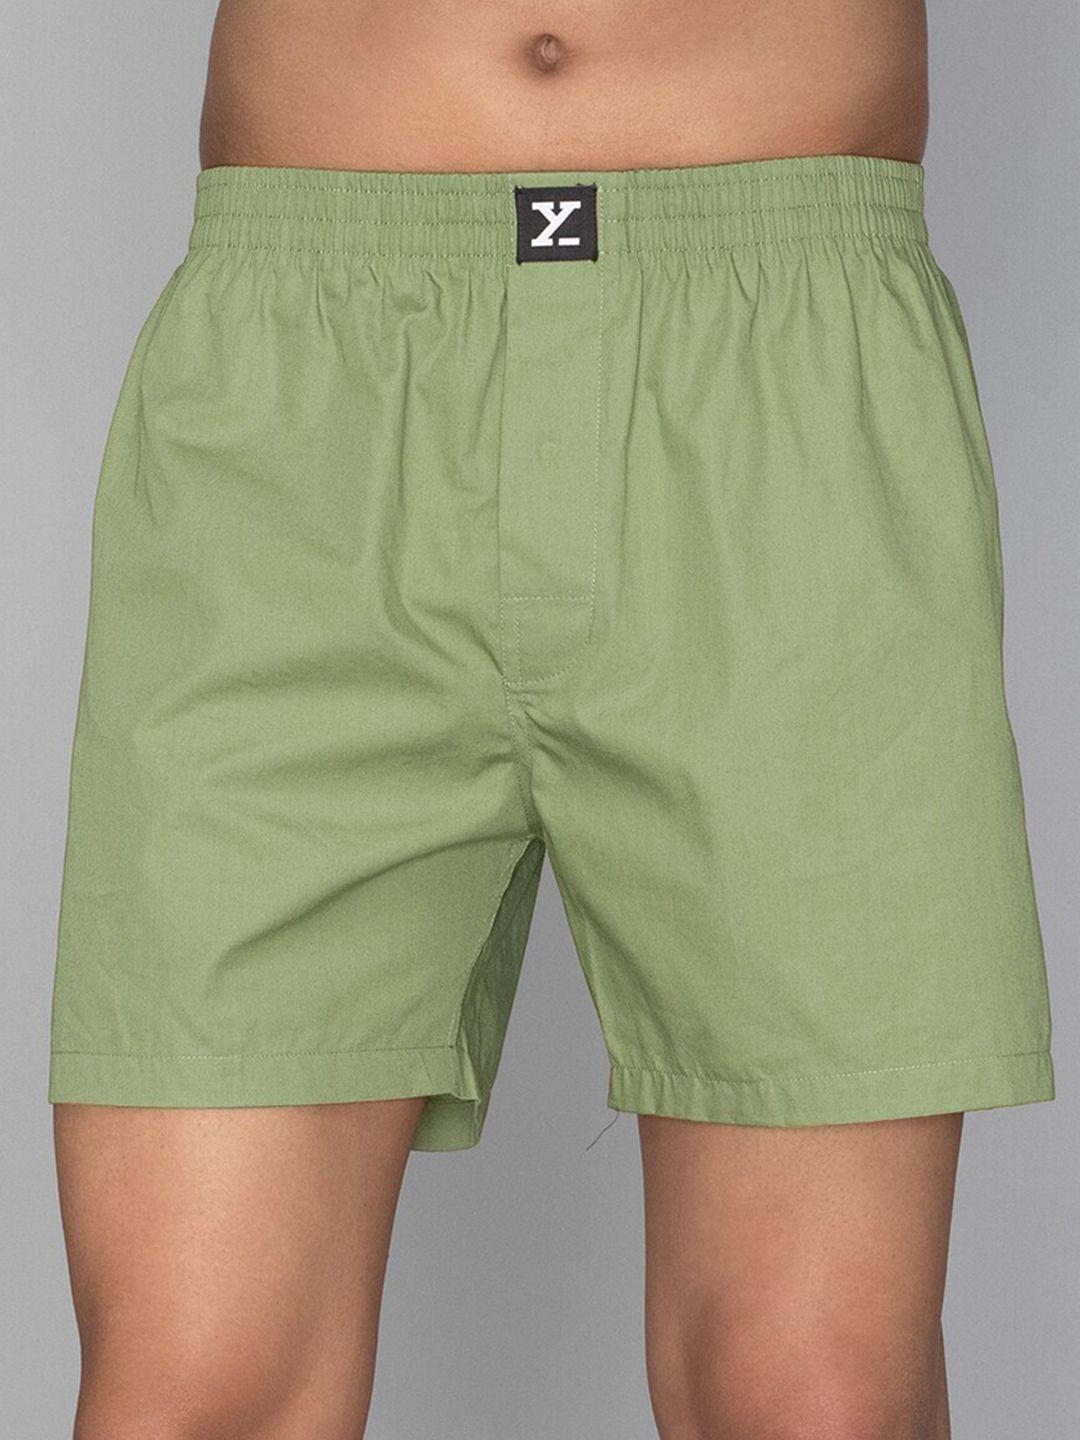 xyxx-combed-cotton-boxers